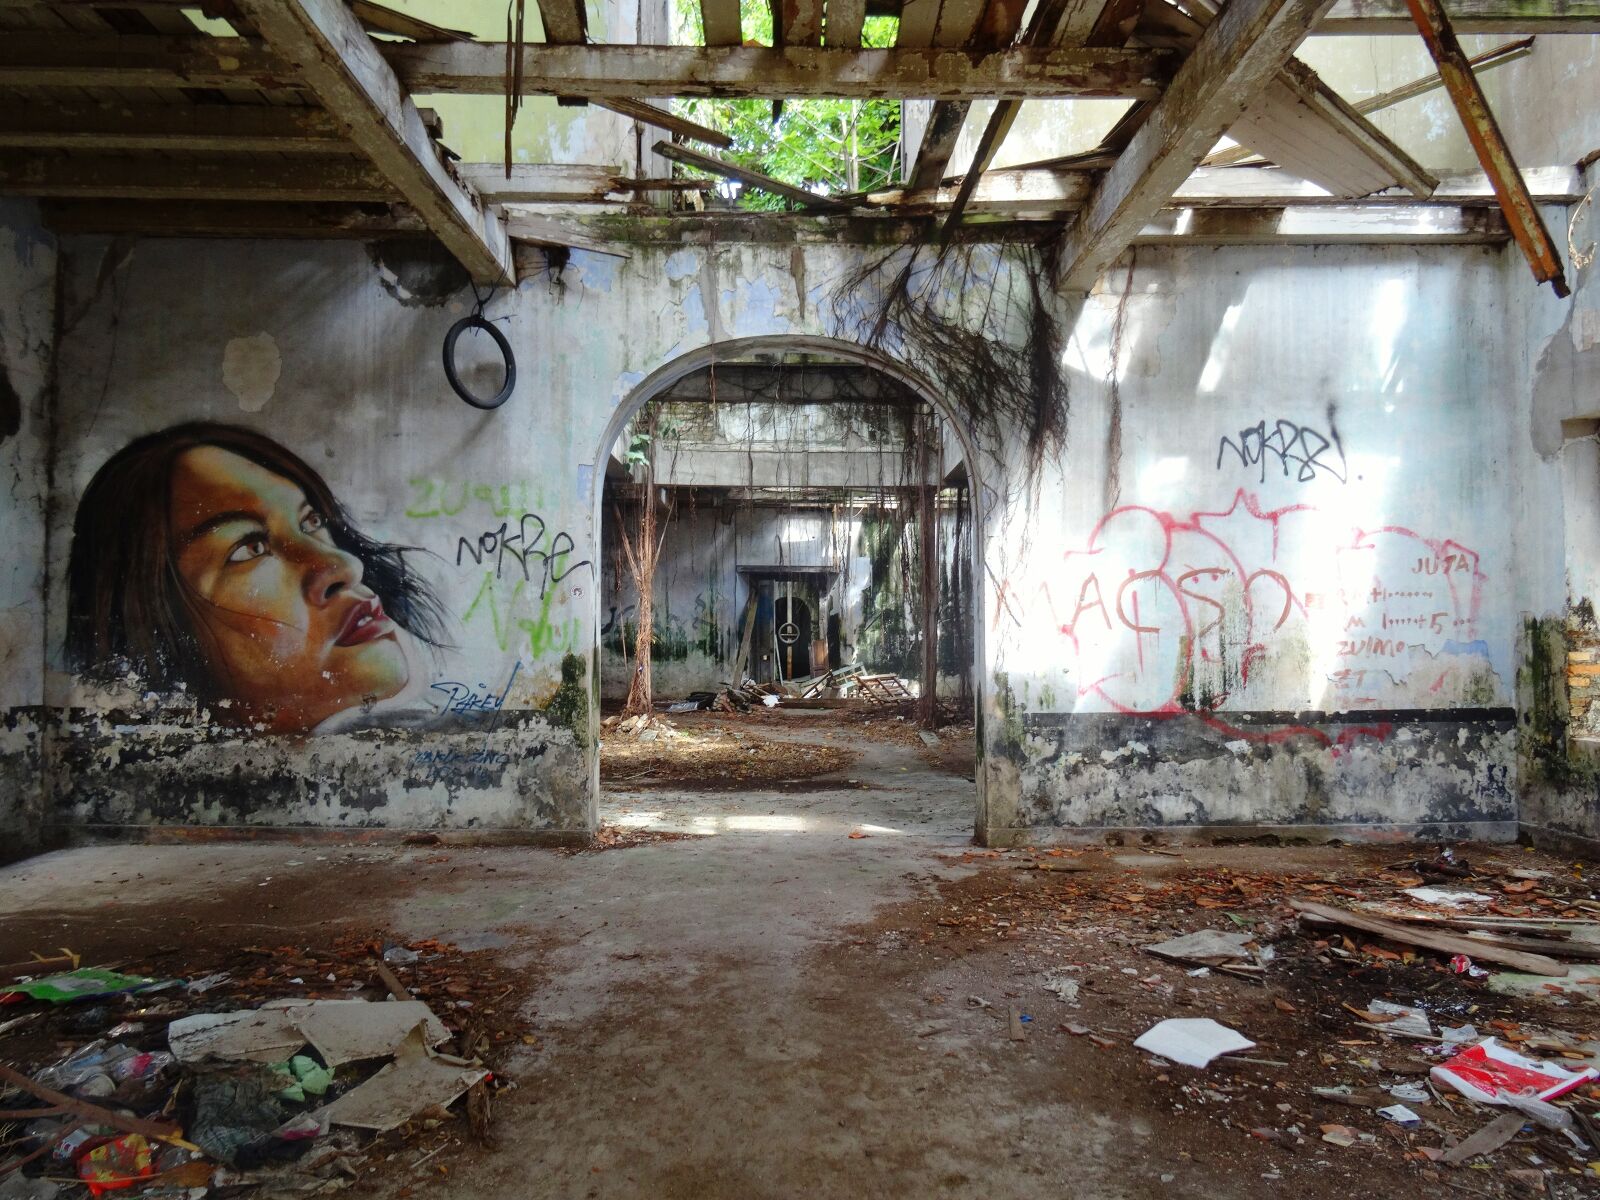 Sony DSC-HX50 sample photo. Graffiti, derelict building, malacca photography